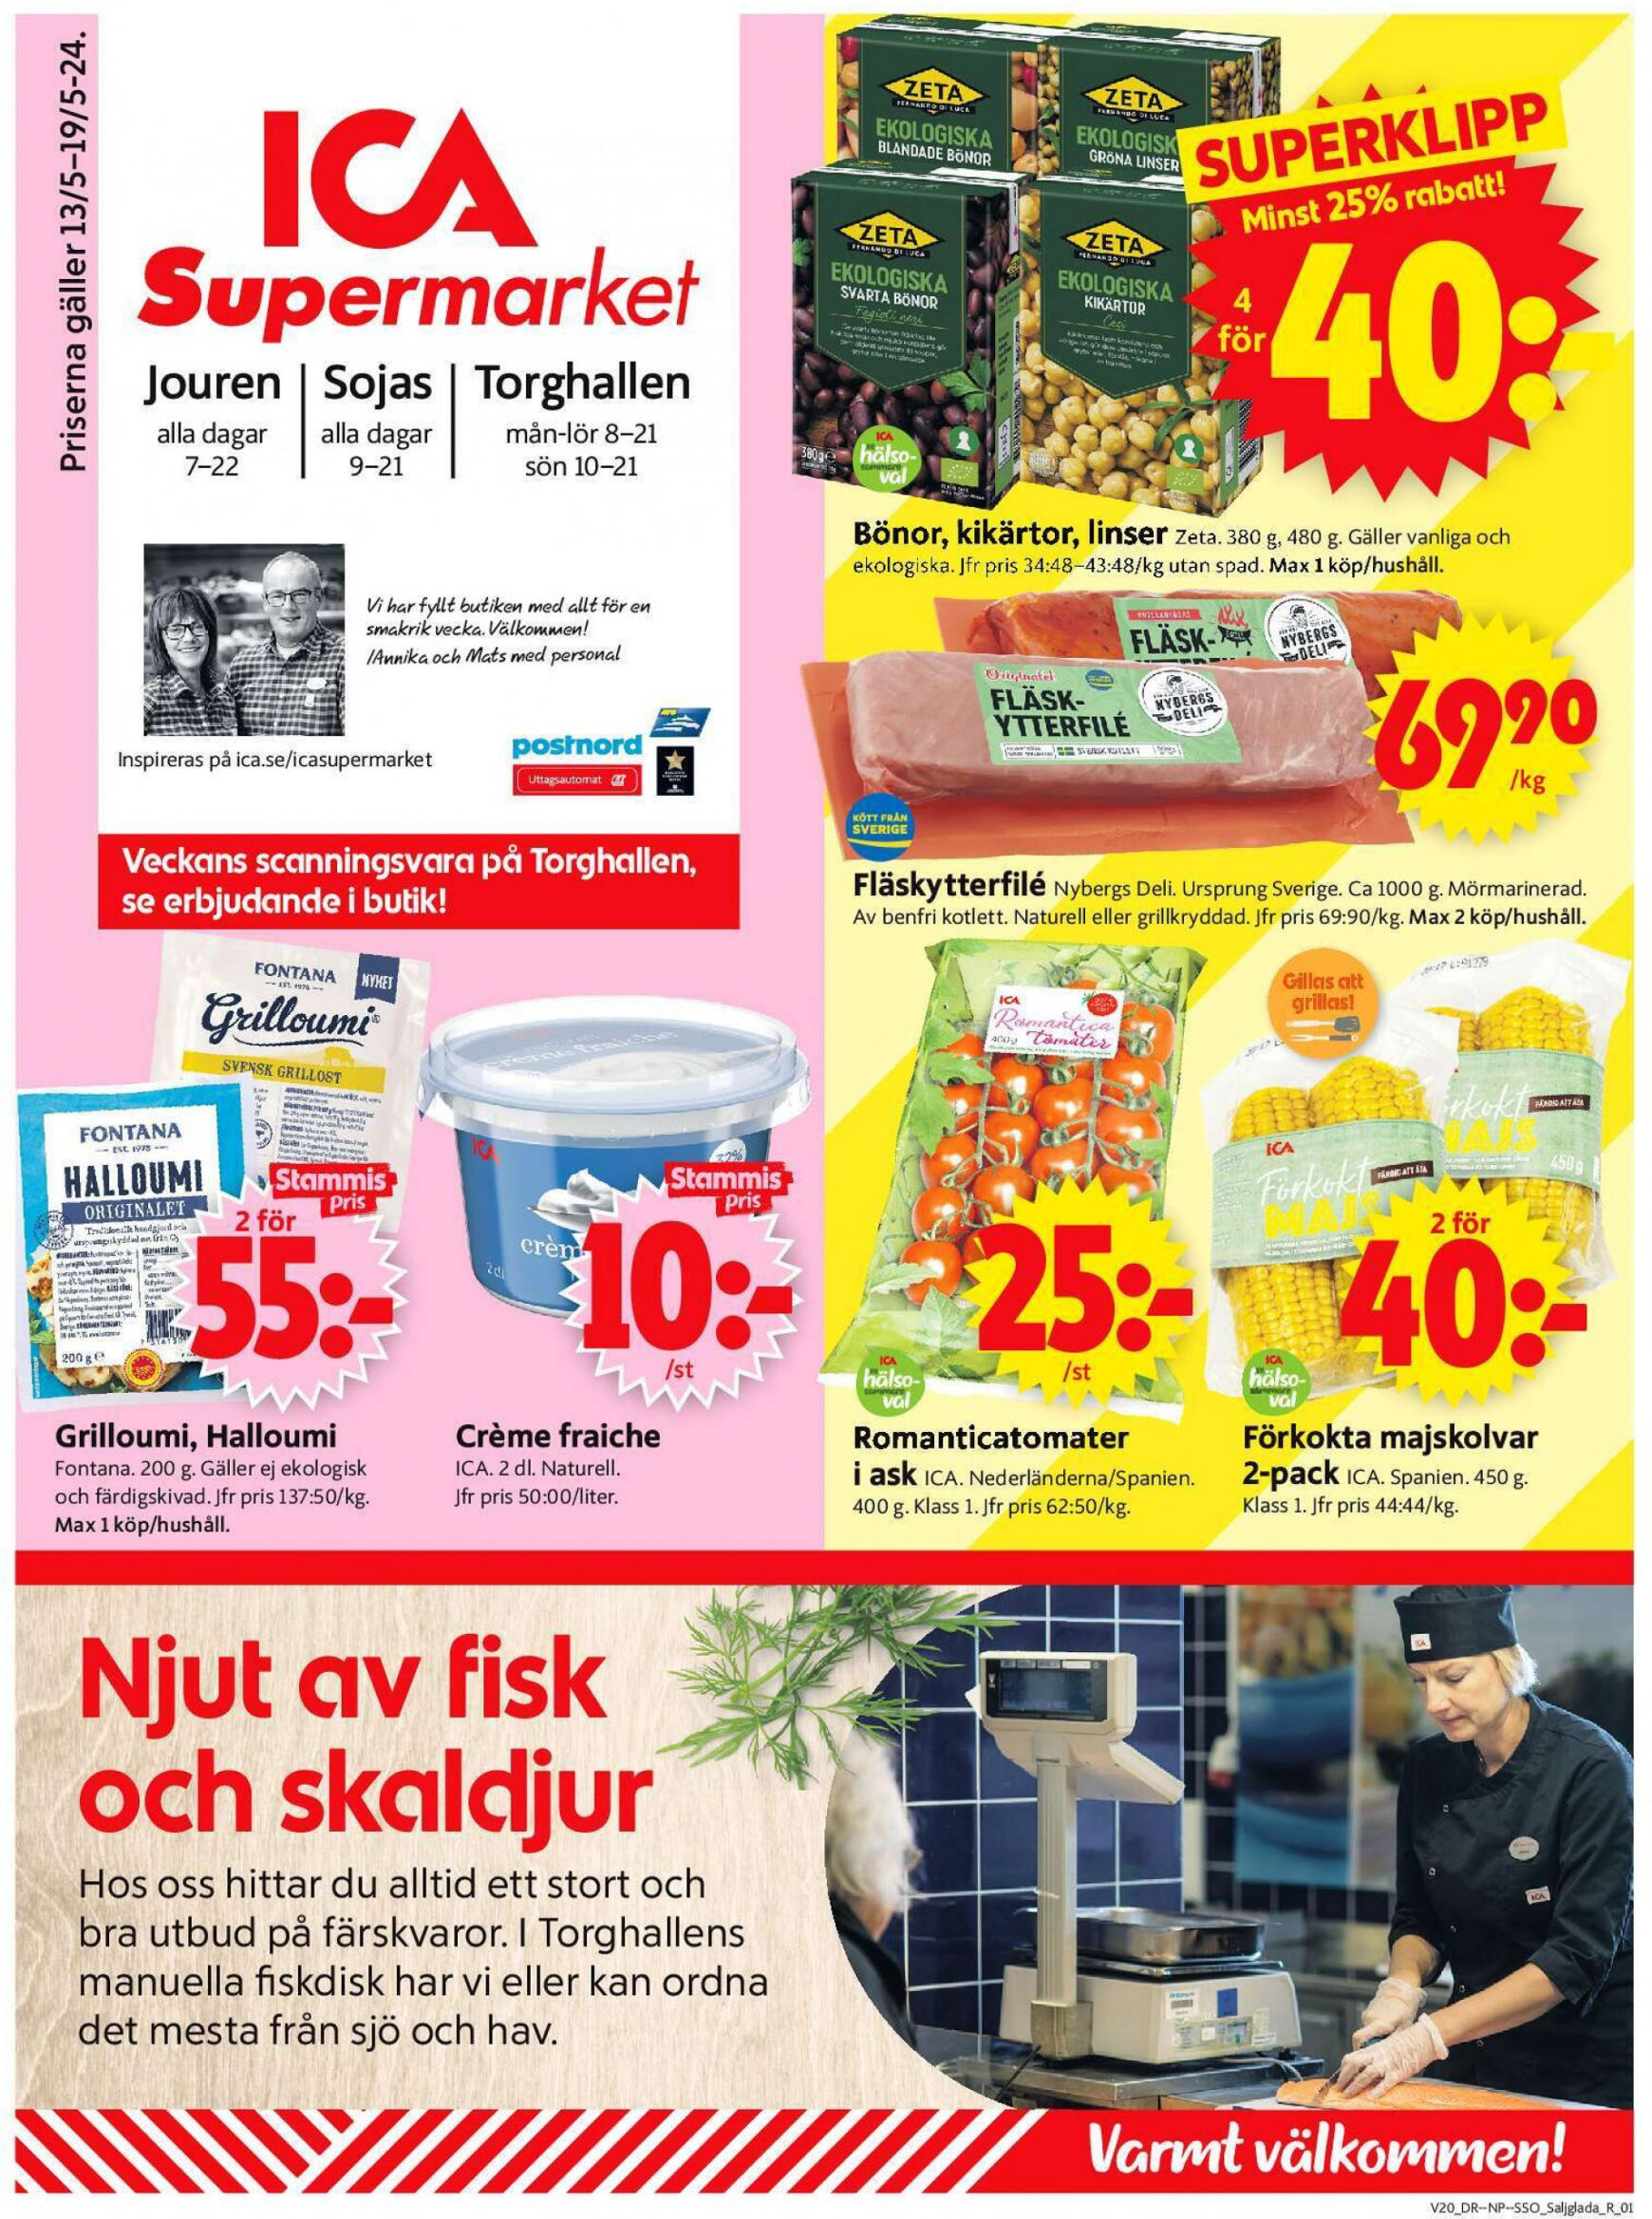 ica-supermarket - Flyer ICA Supermarket current 13.05. - 19.05.